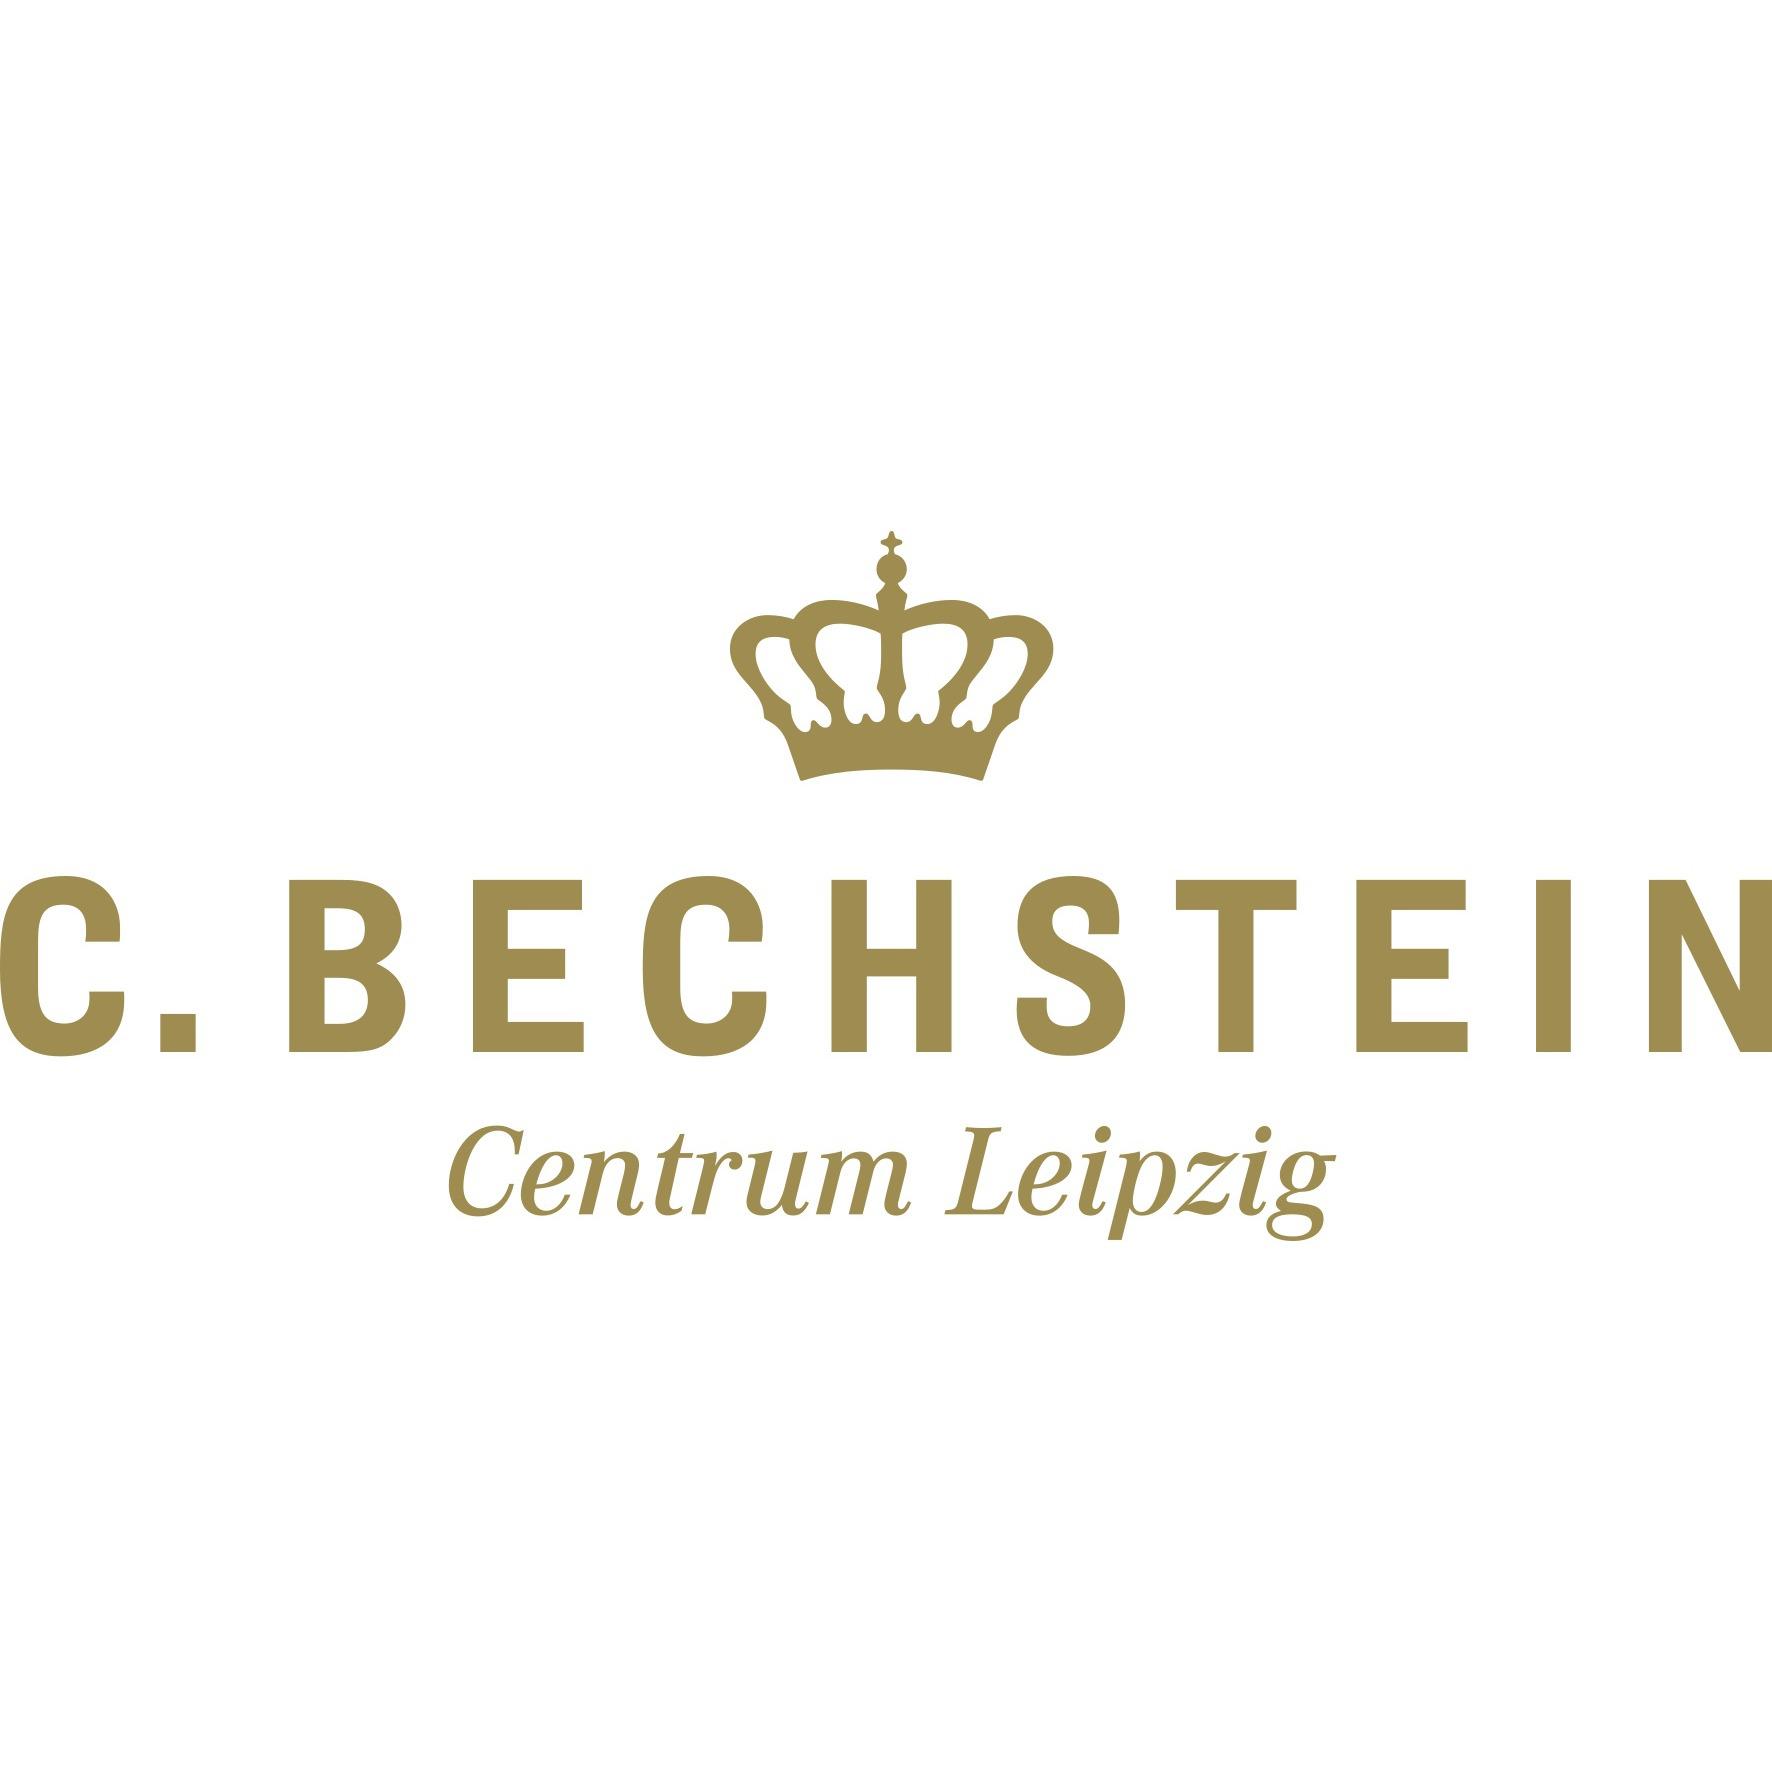 C. Bechstein Centrum Leipzig GmbH in Leipzig - Logo